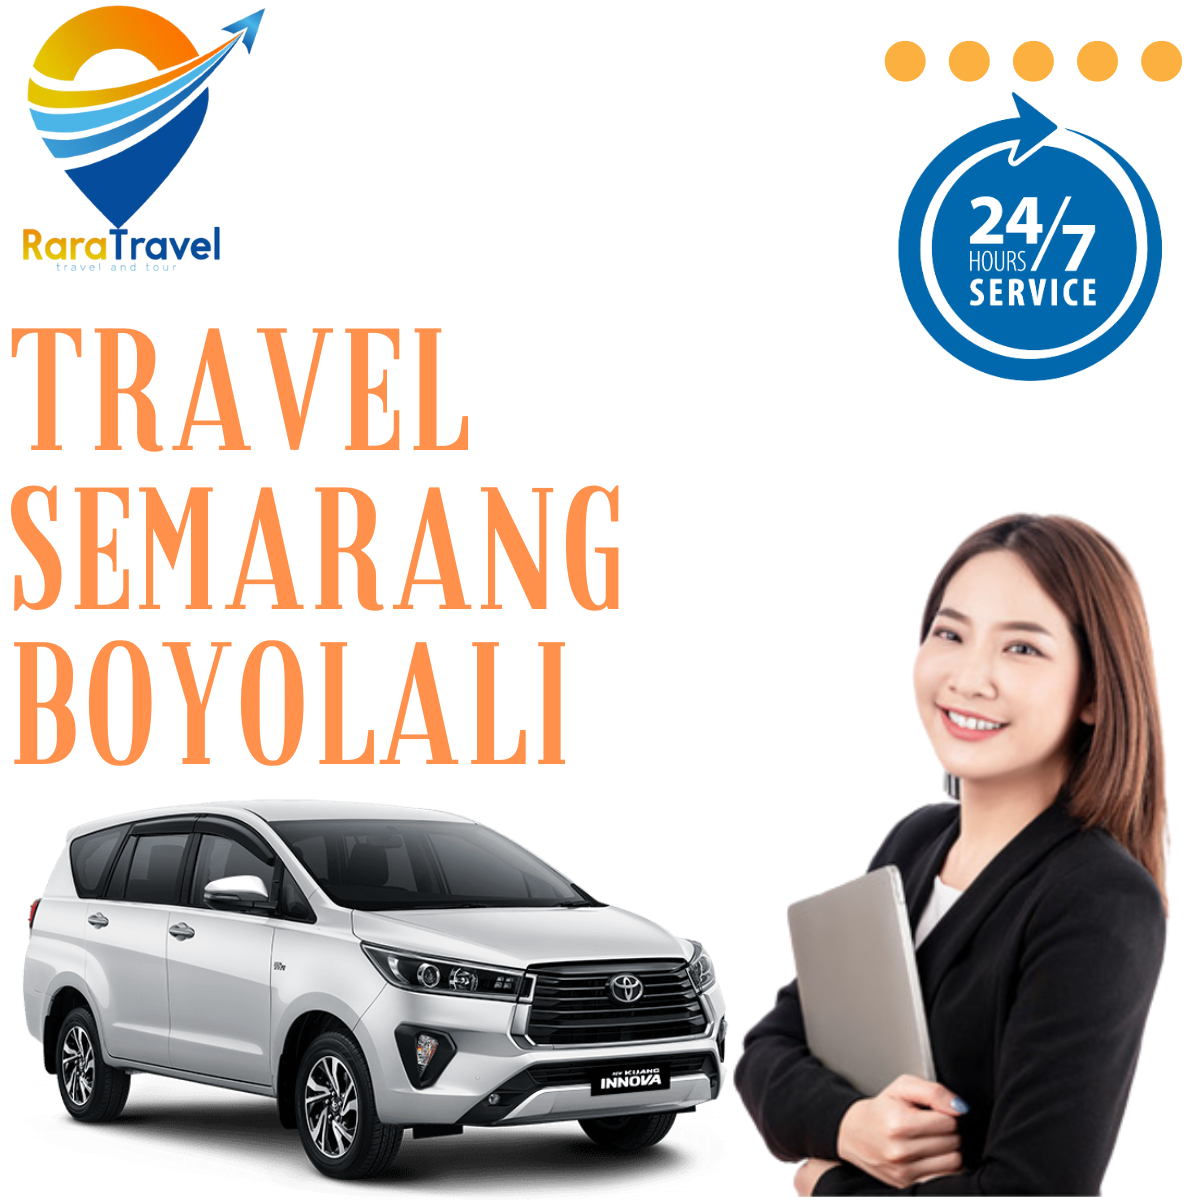 Travel Semarang Boyolali: Harga Ticket Murah di RARATRAVEL.ID